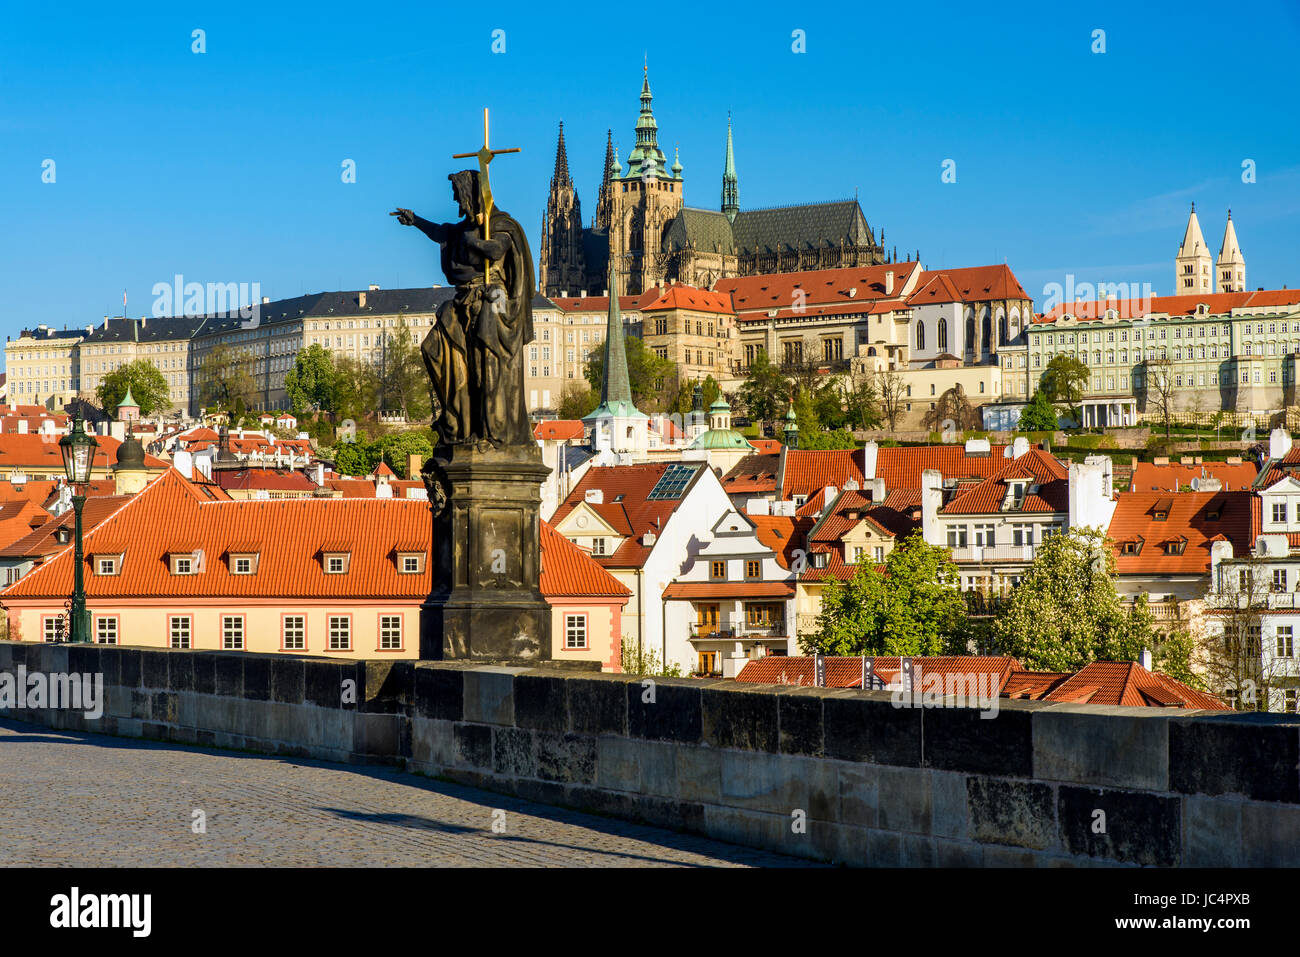 Vista de la Catedral de San Vito y el complejo del castillo de Praga desde el Puente Carlos, Praga, Bohemia, República Checa Foto de stock